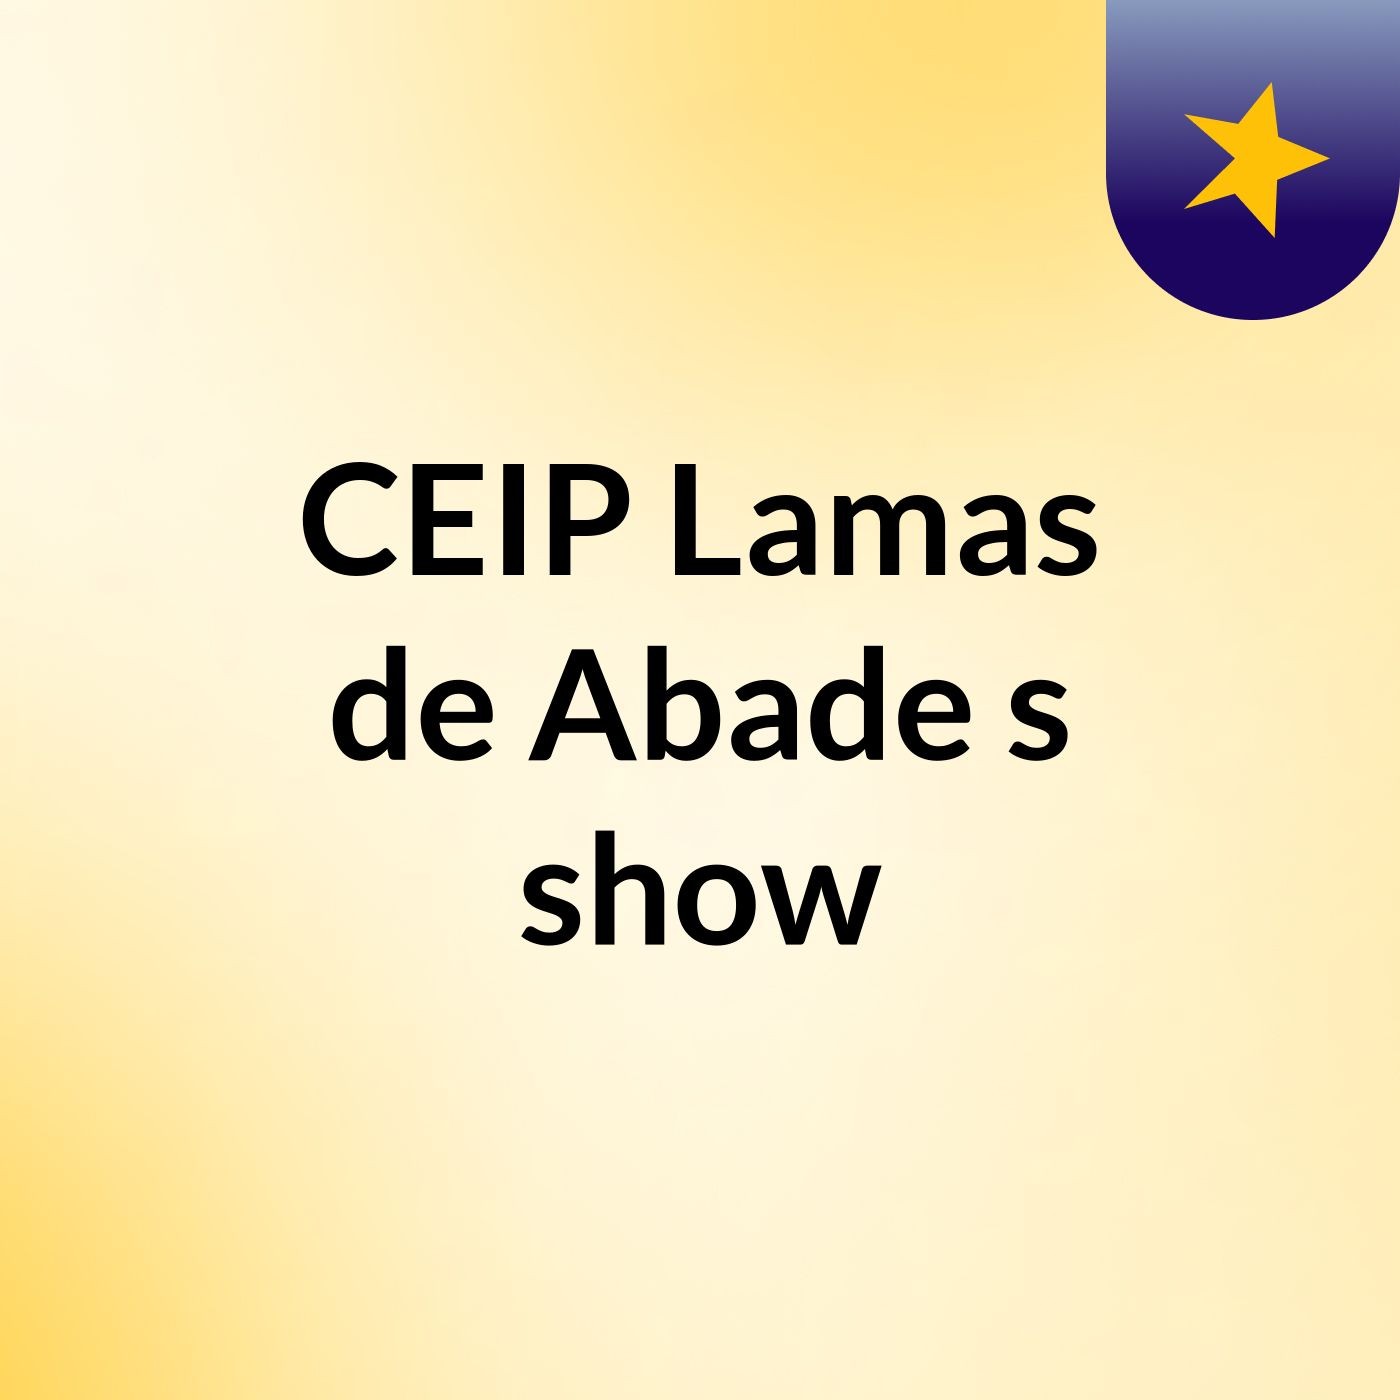 CEIP Lamas de Abade's show